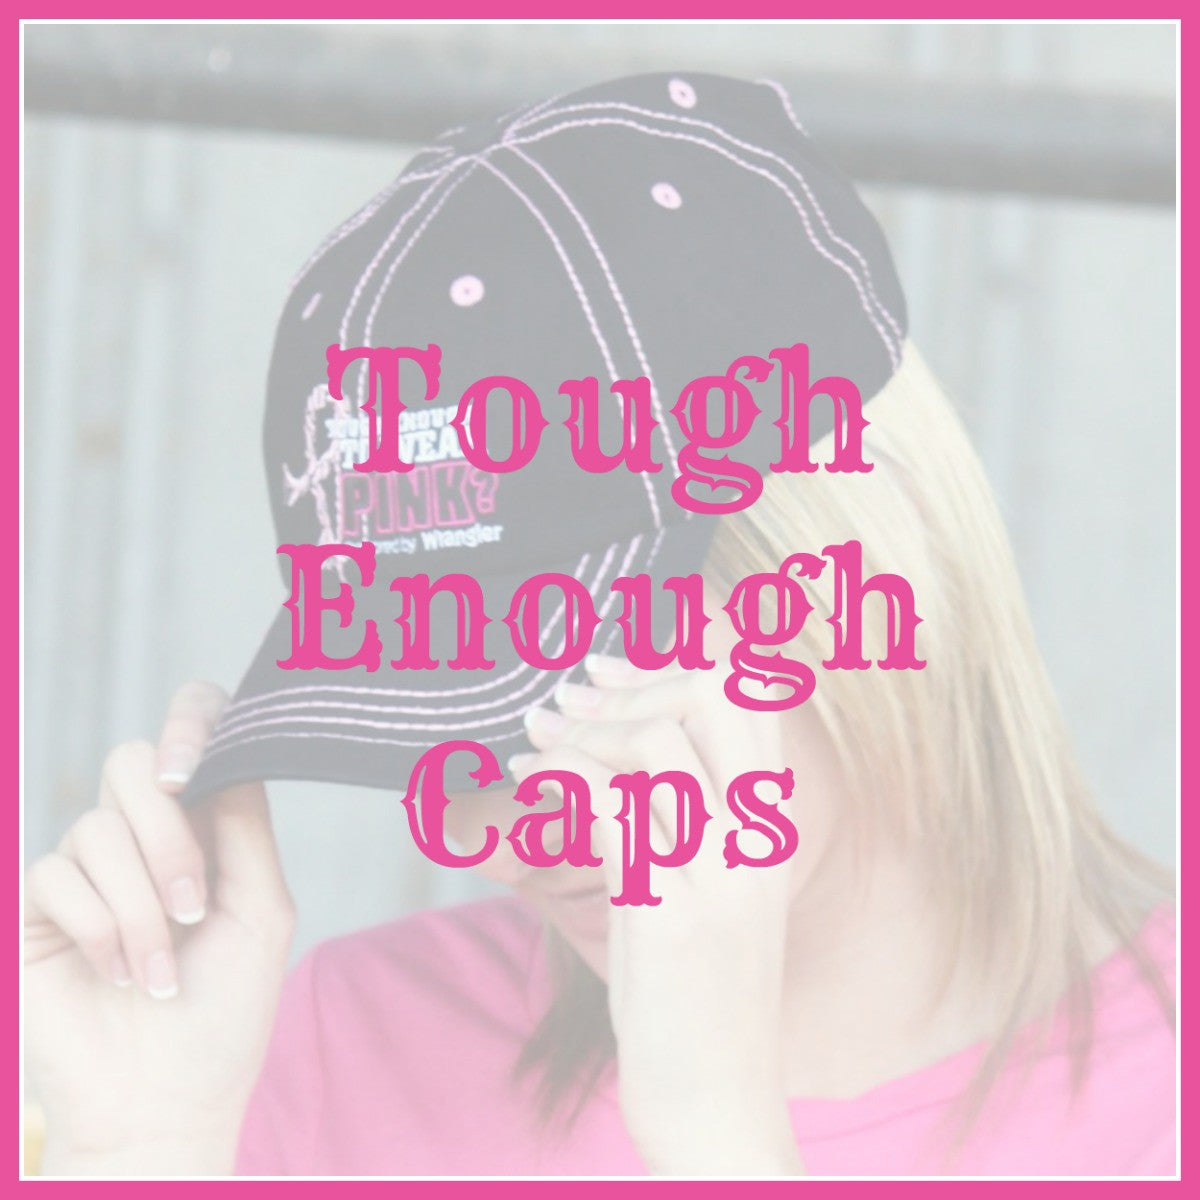 Tough Enough Caps